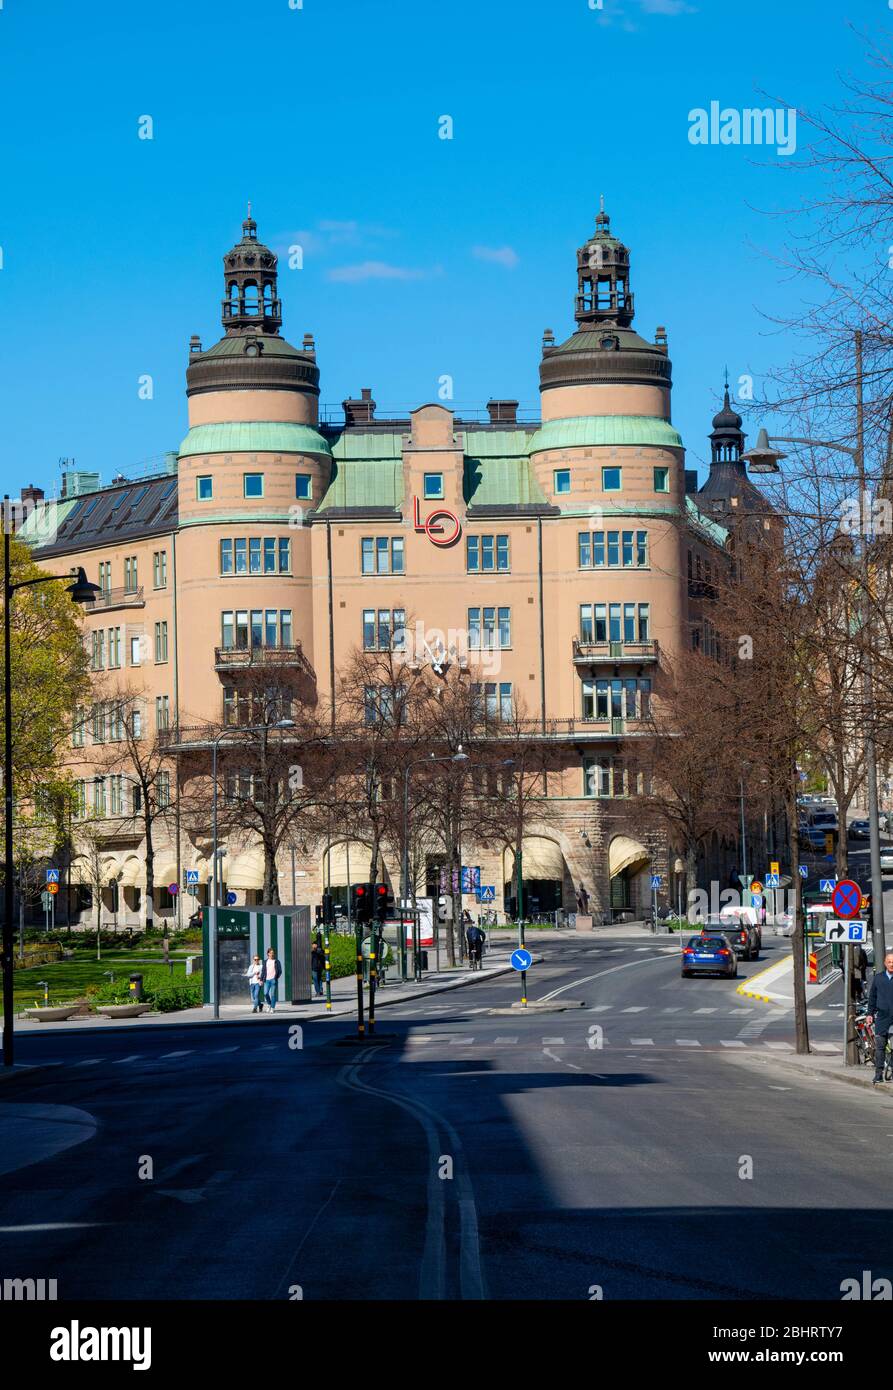 Traffico fuori dal famoso edificio, conosciuto come 'lo-borgen' nel centro di Stoccolma. Ha lavorato presso la Confederazione sindacale svedese dal 1926. Foto Stock